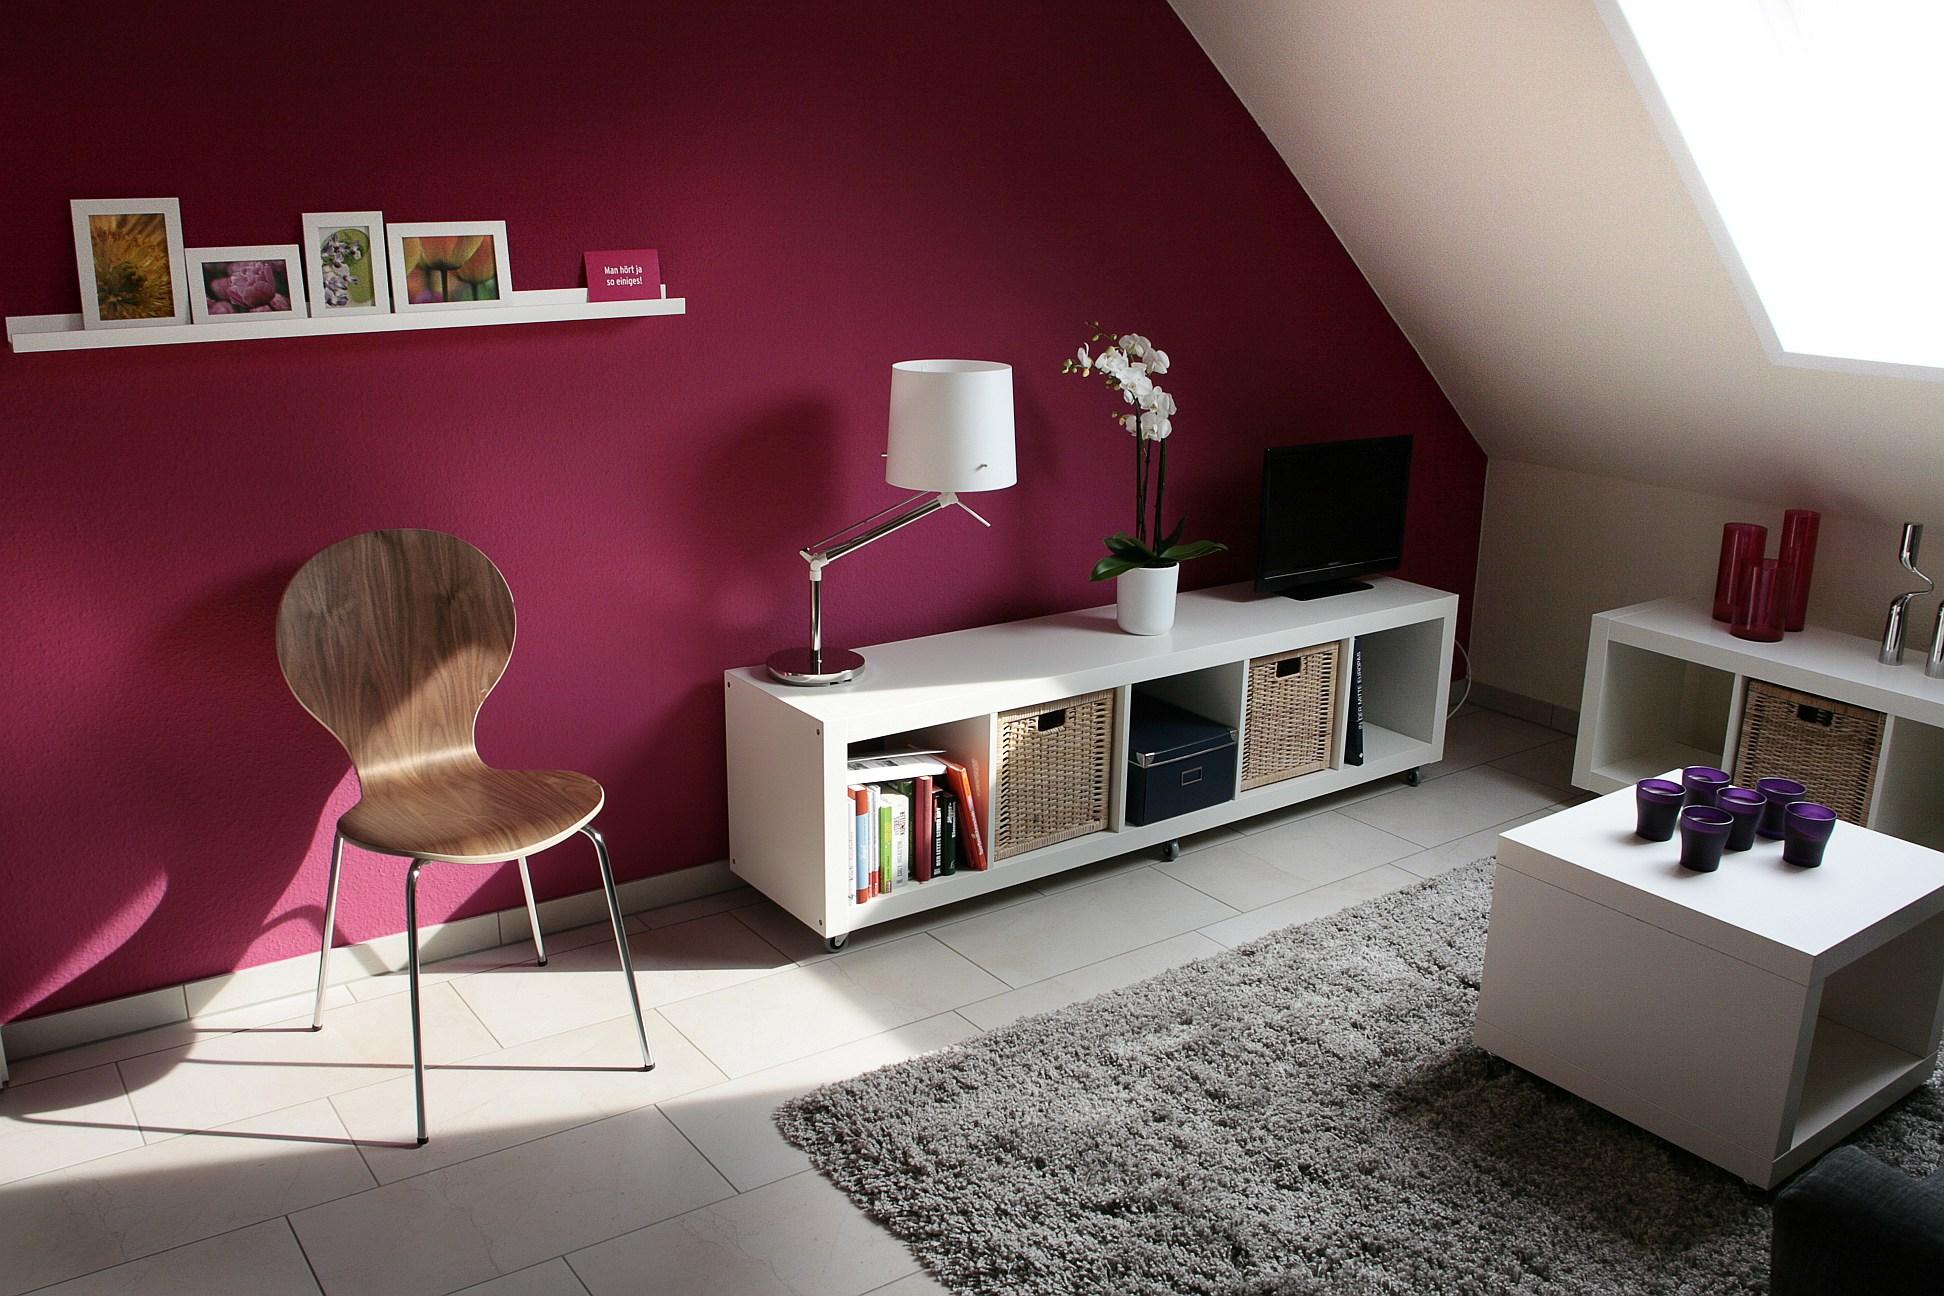 Gästezimmer mit Akzentwand in der Farbe Orchidee #gästezimmer #sideboard #lowboard ©Feinarbeit Wohnberatung/Th.Finster